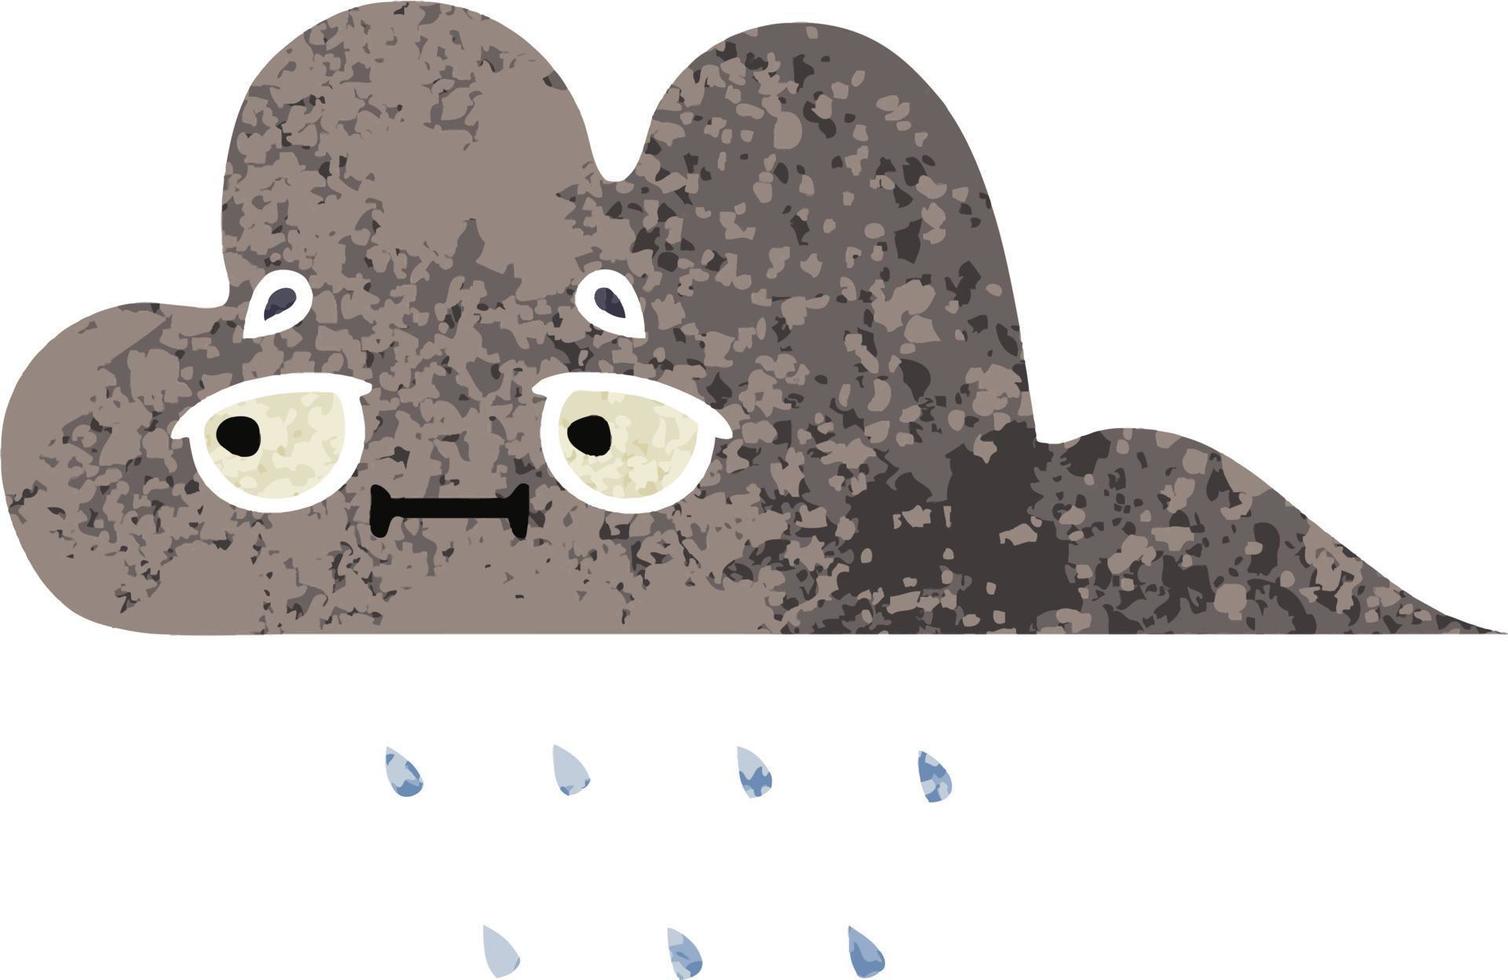 nuage de pluie de tempête de dessin animé de style illustration rétro vecteur